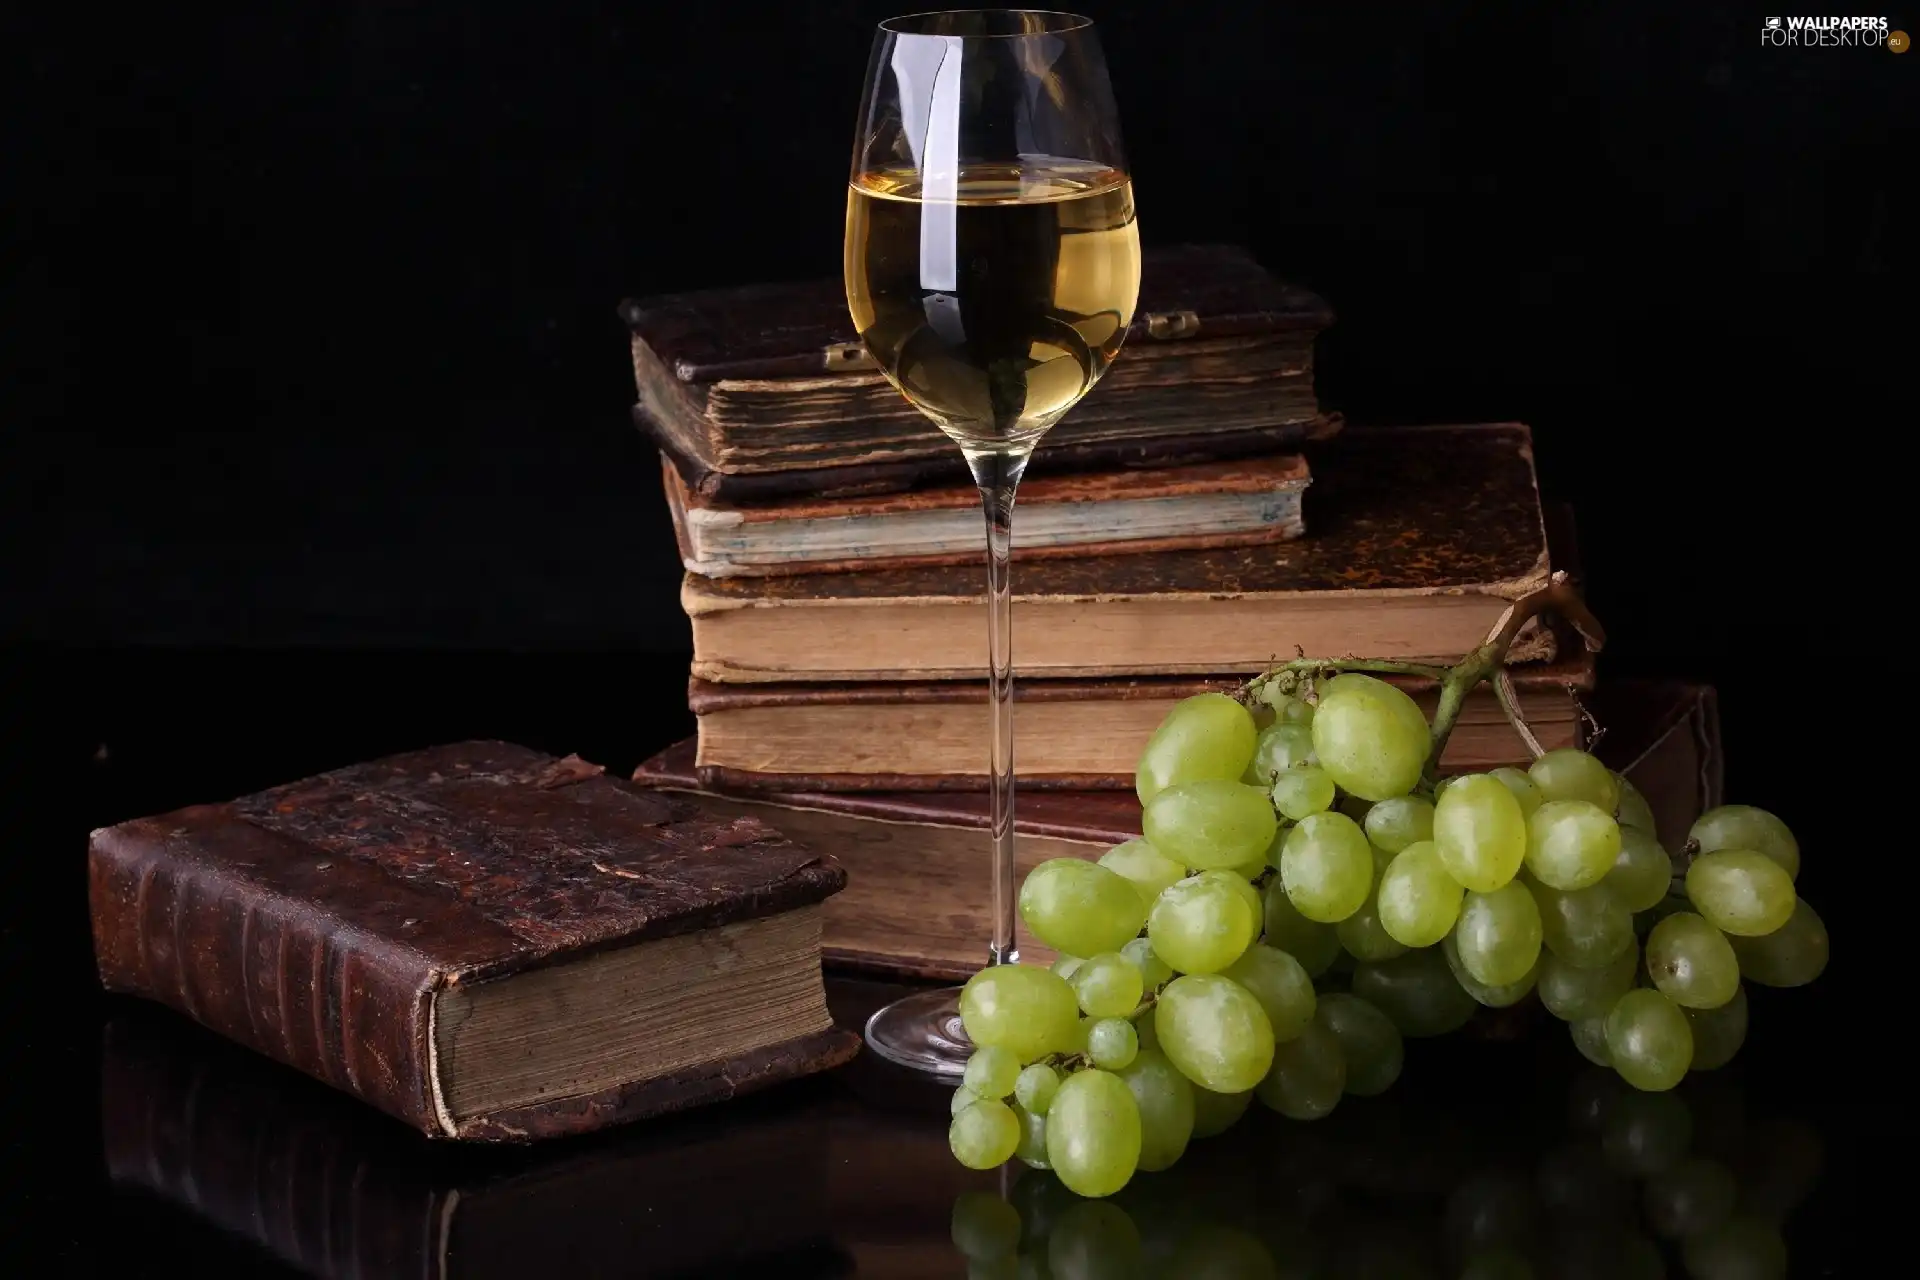 Wine, Grapes, Books